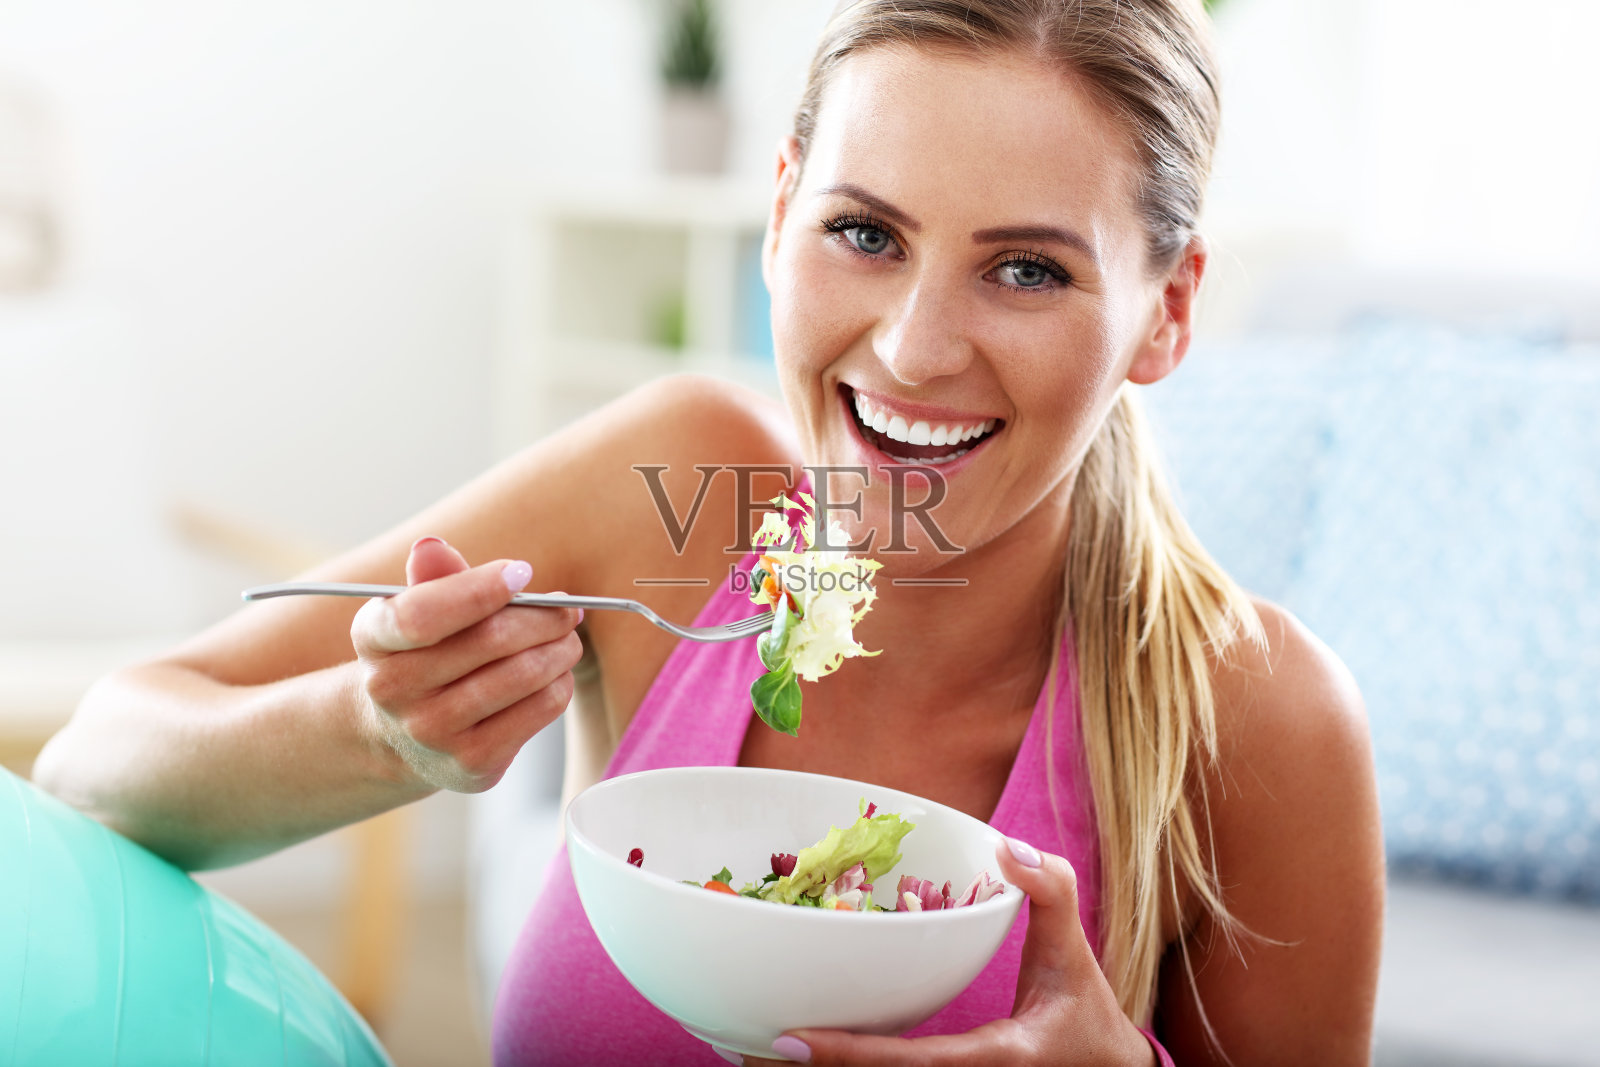 年轻女子在锻炼后吃健康的沙拉照片摄影图片